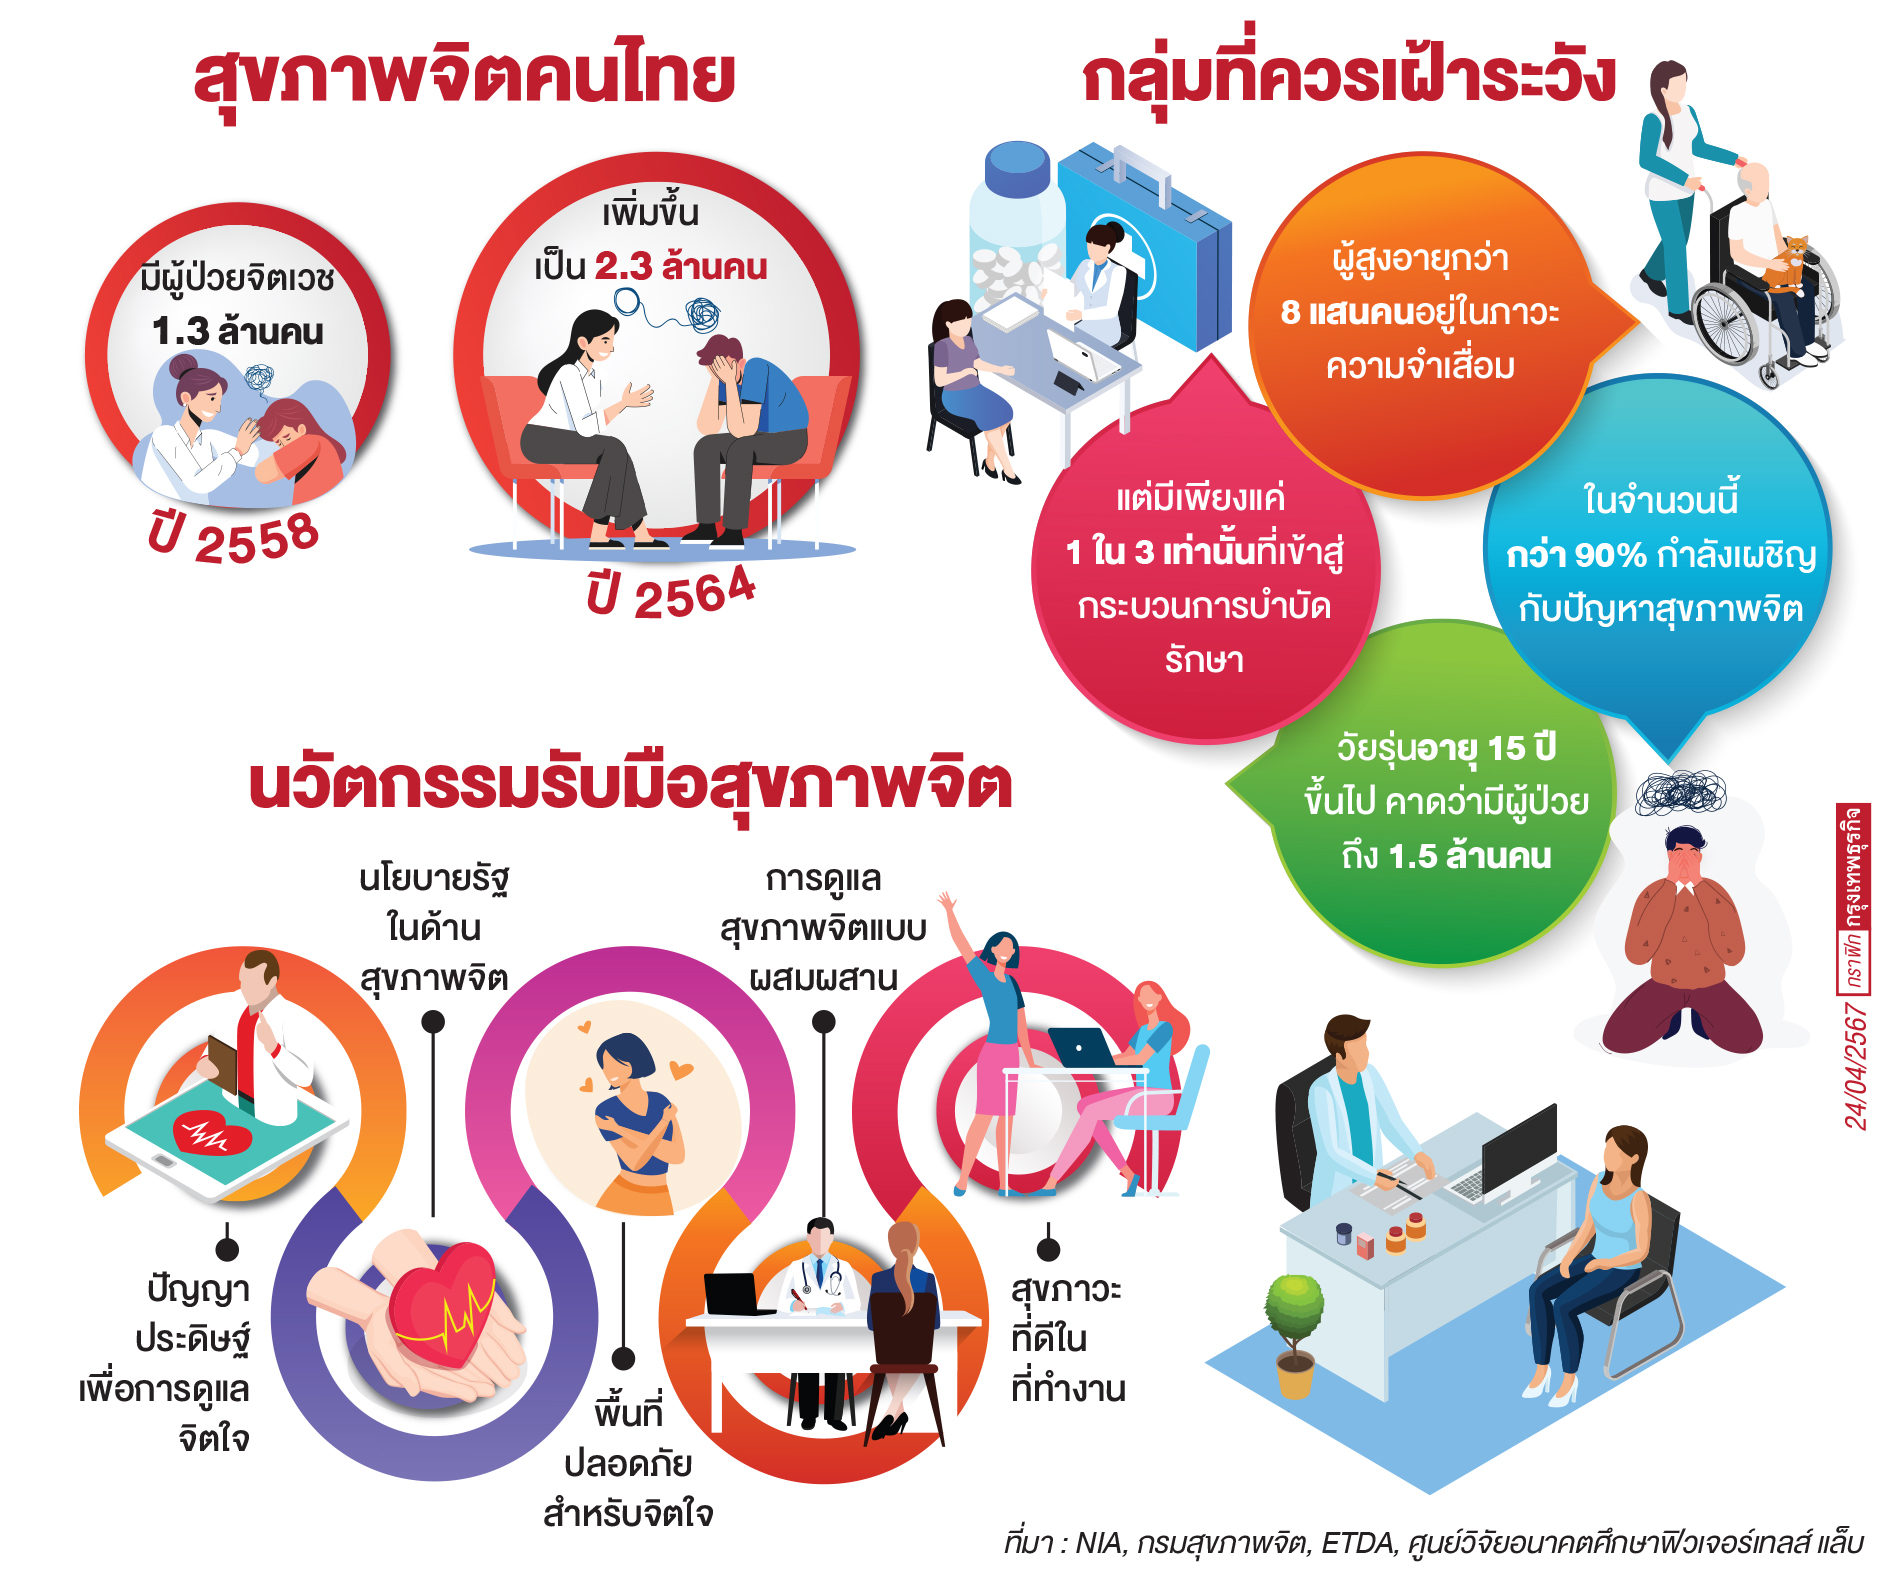 ปัจจัยเสี่ยงแห่งอนาคต 'สุขภาพจิตคนไทยในระยะ 10 ปี'